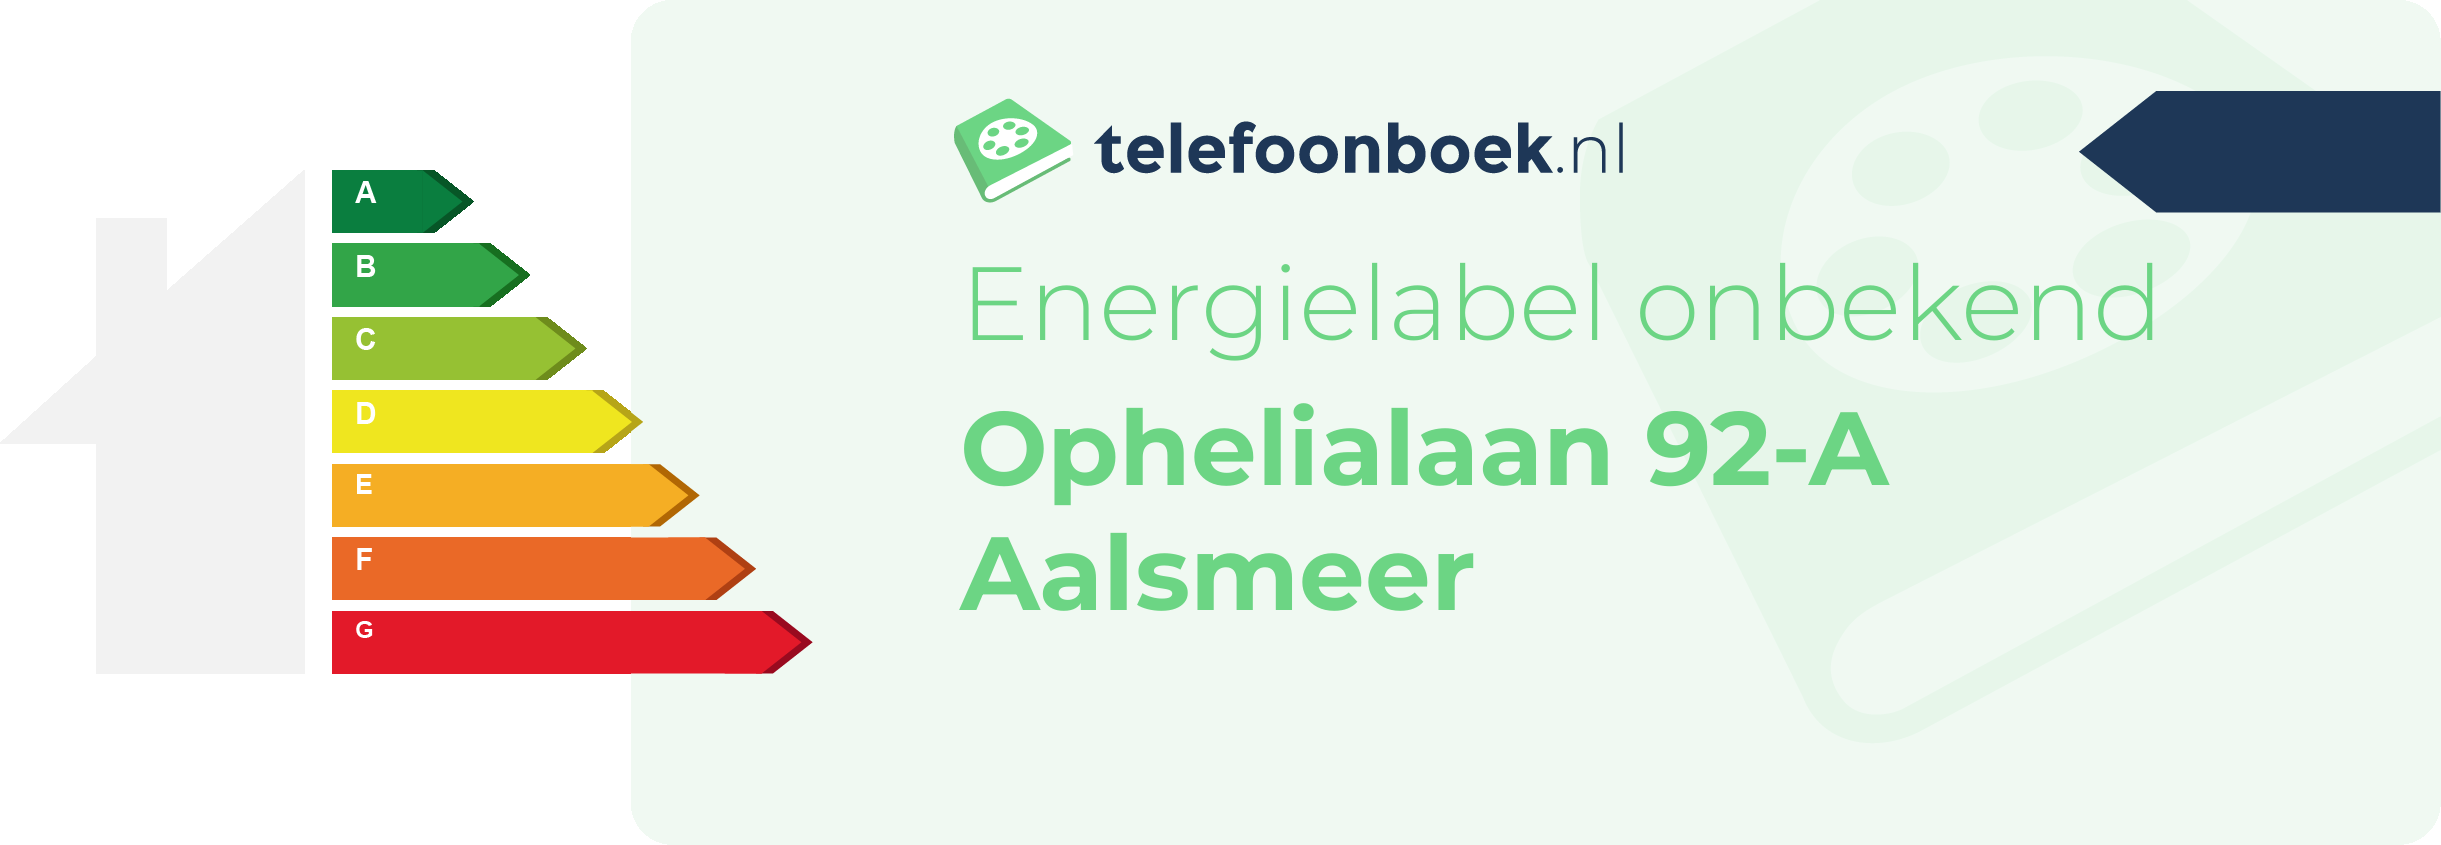 Energielabel Ophelialaan 92-A Aalsmeer